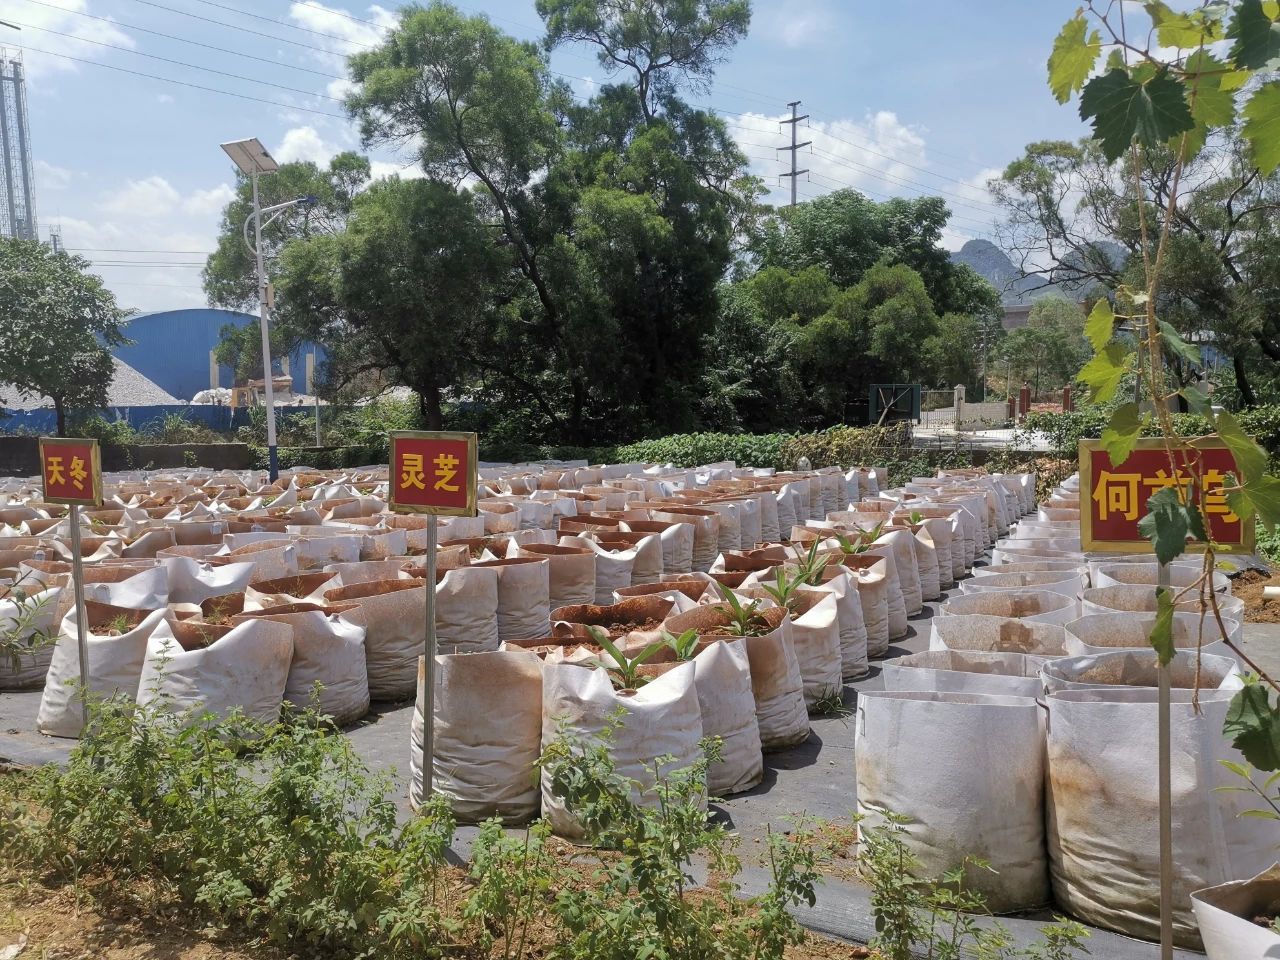 廣西瑞欣農業科技有限公司正在培植中的中草藥。